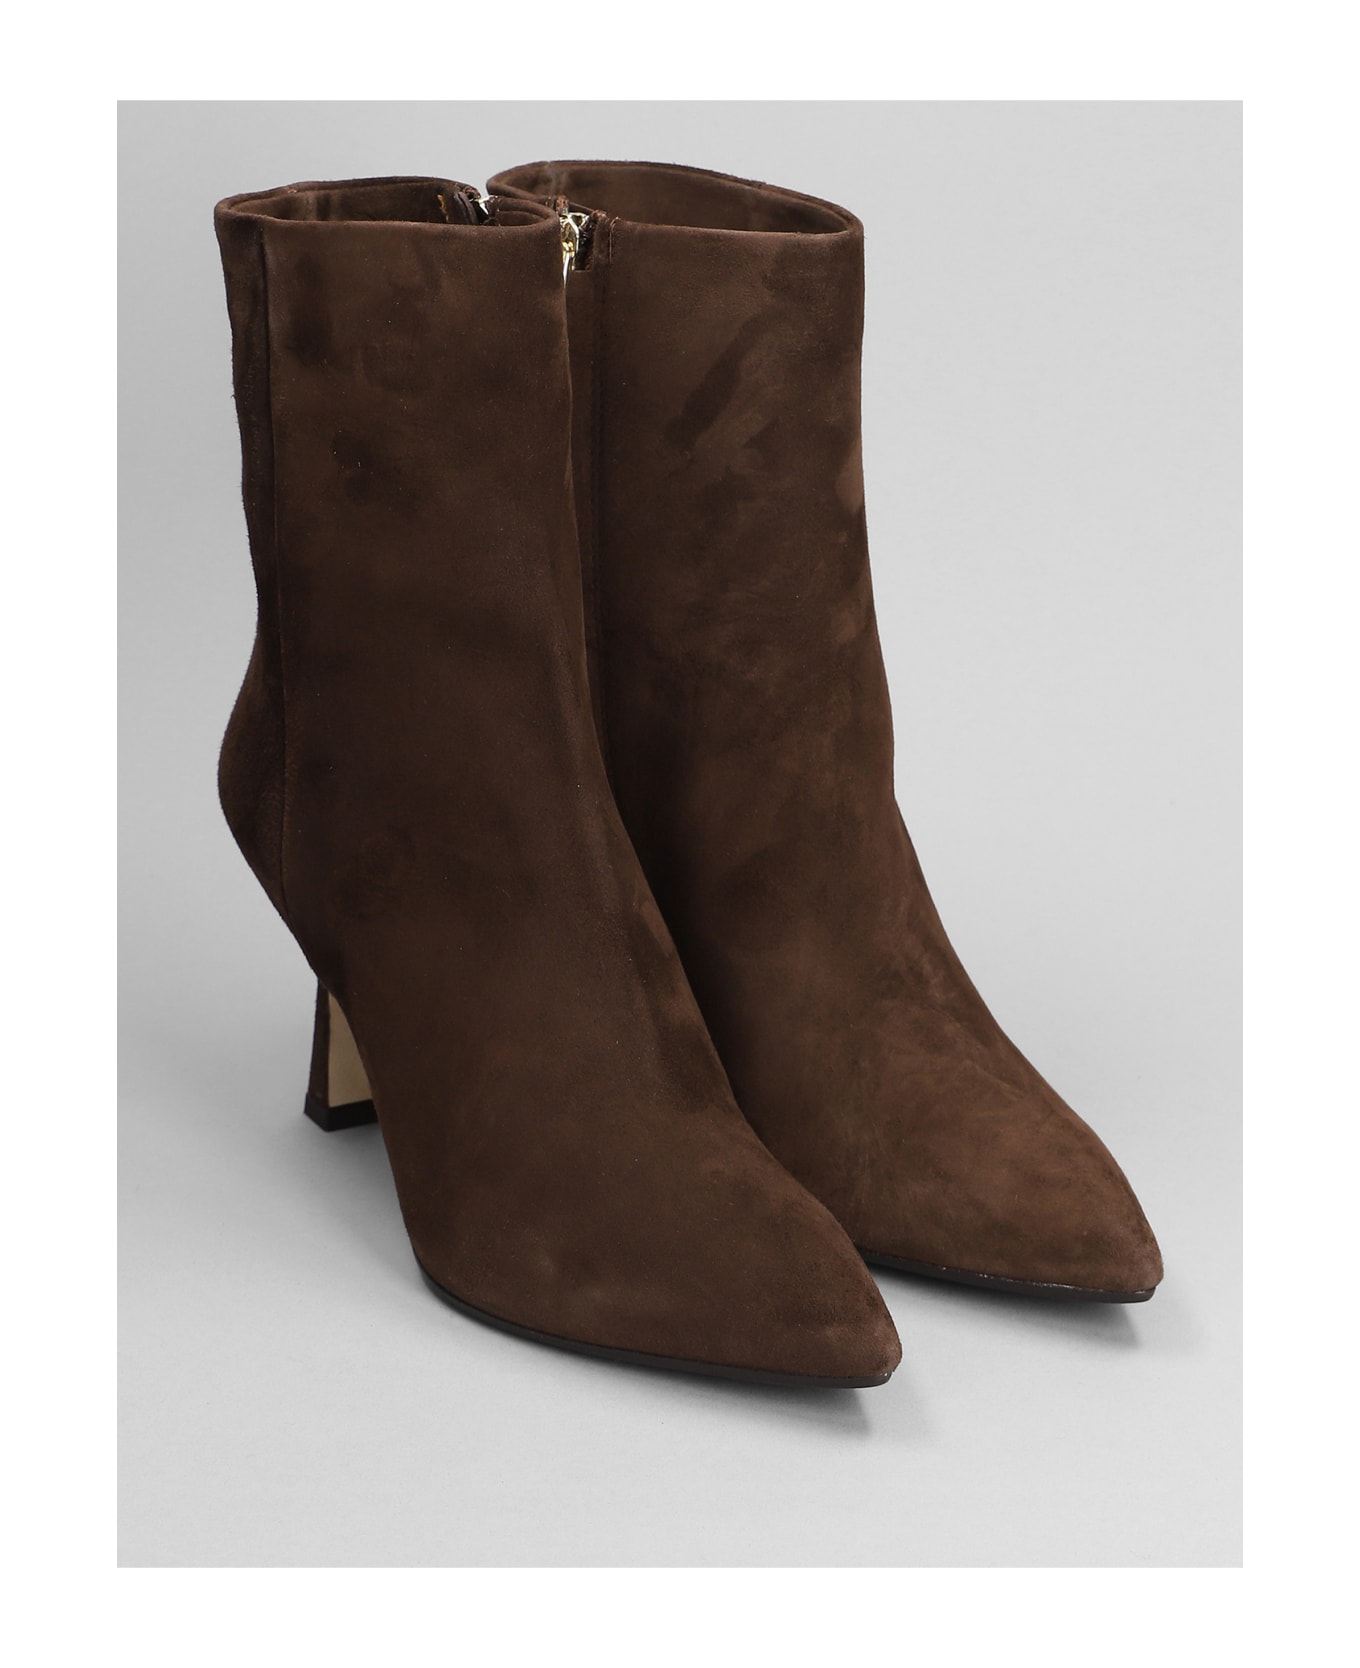 The Seller High Heels Ankle Boots In Dark Brown Suede - dark brown